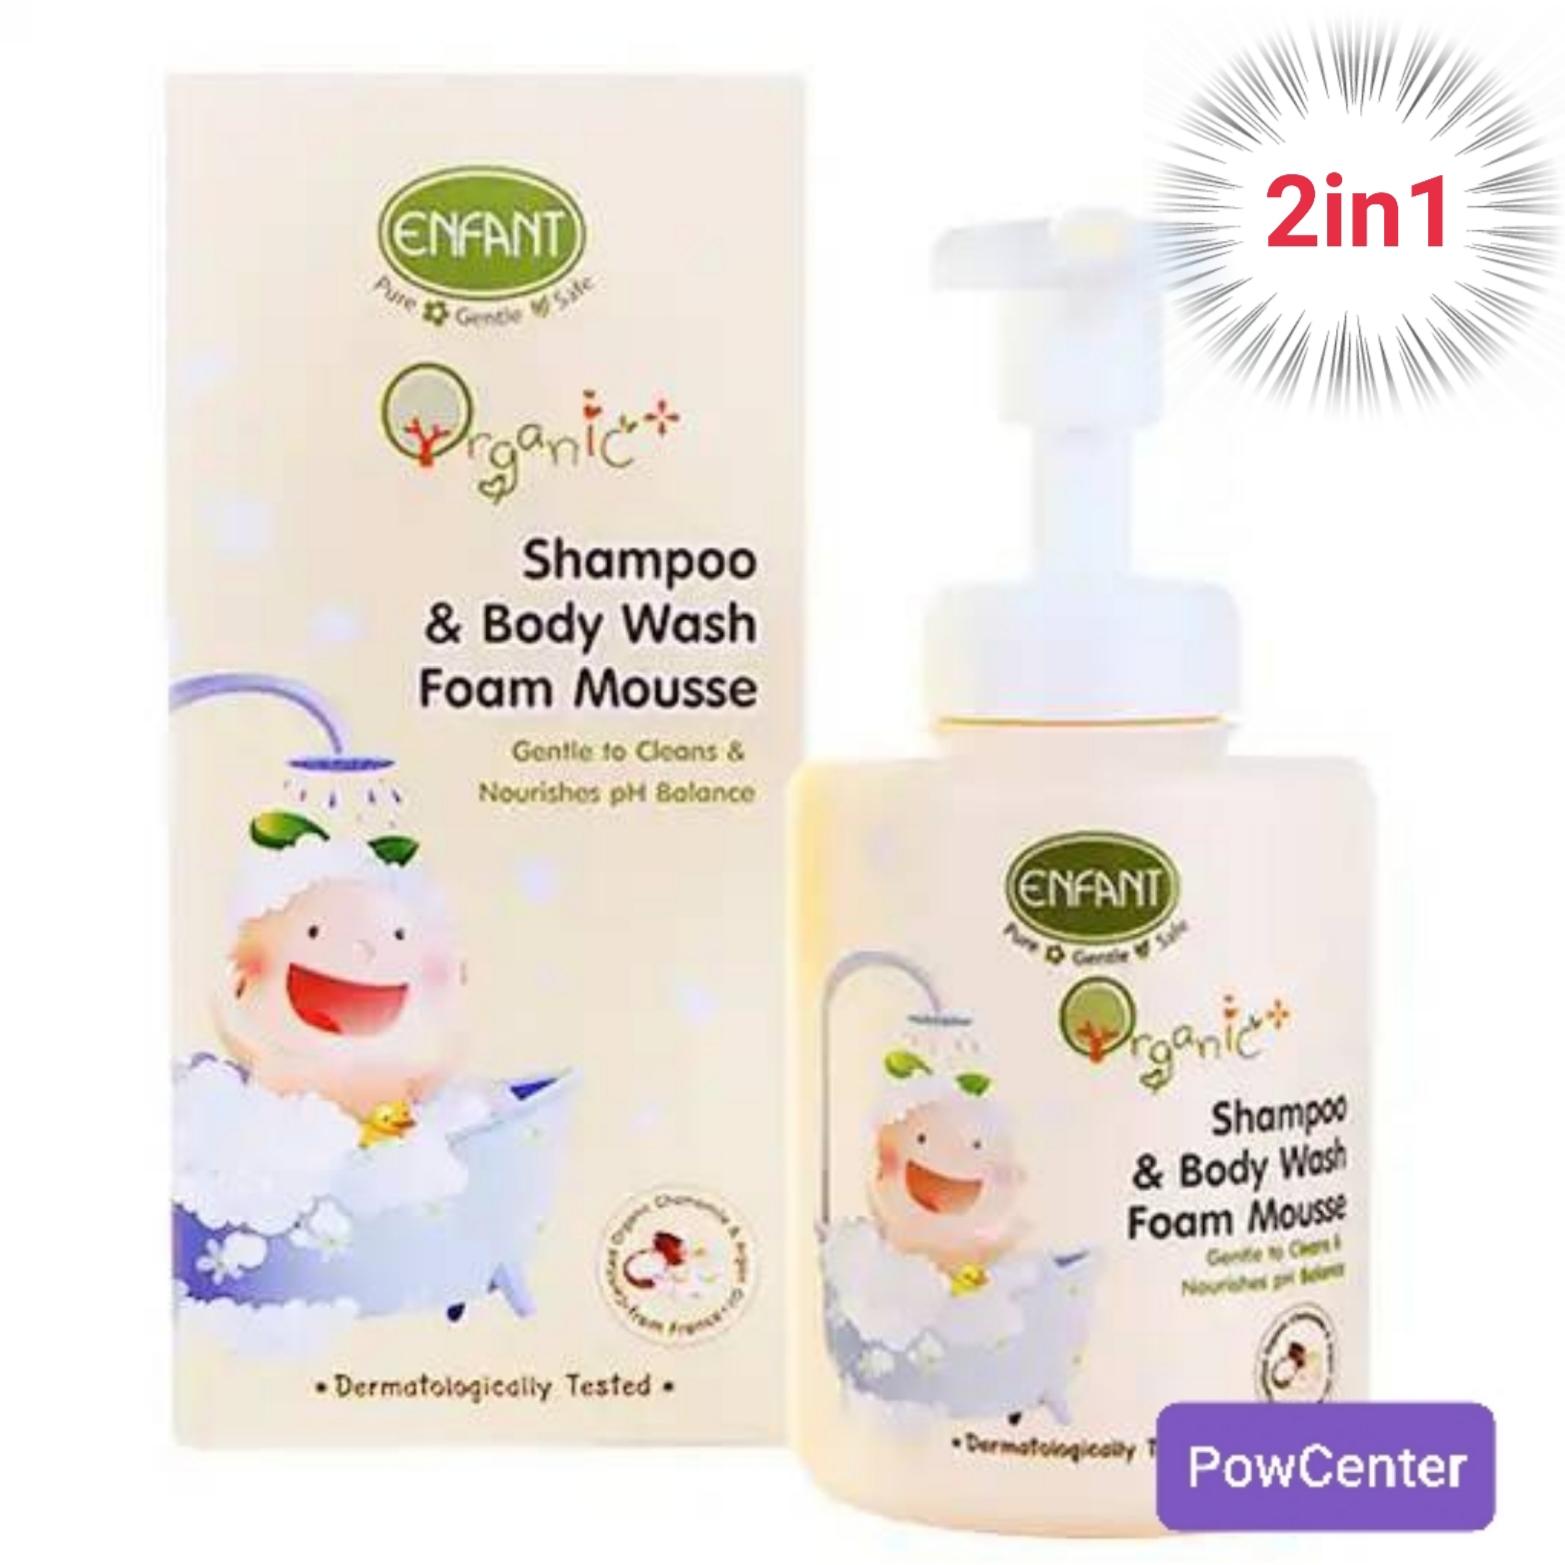 แชมพู+โฟมอาบน้ำ 2in1 อองฟอง ออแกนิค Shampoo & Body Wash Foam Mousse Enfant Organic